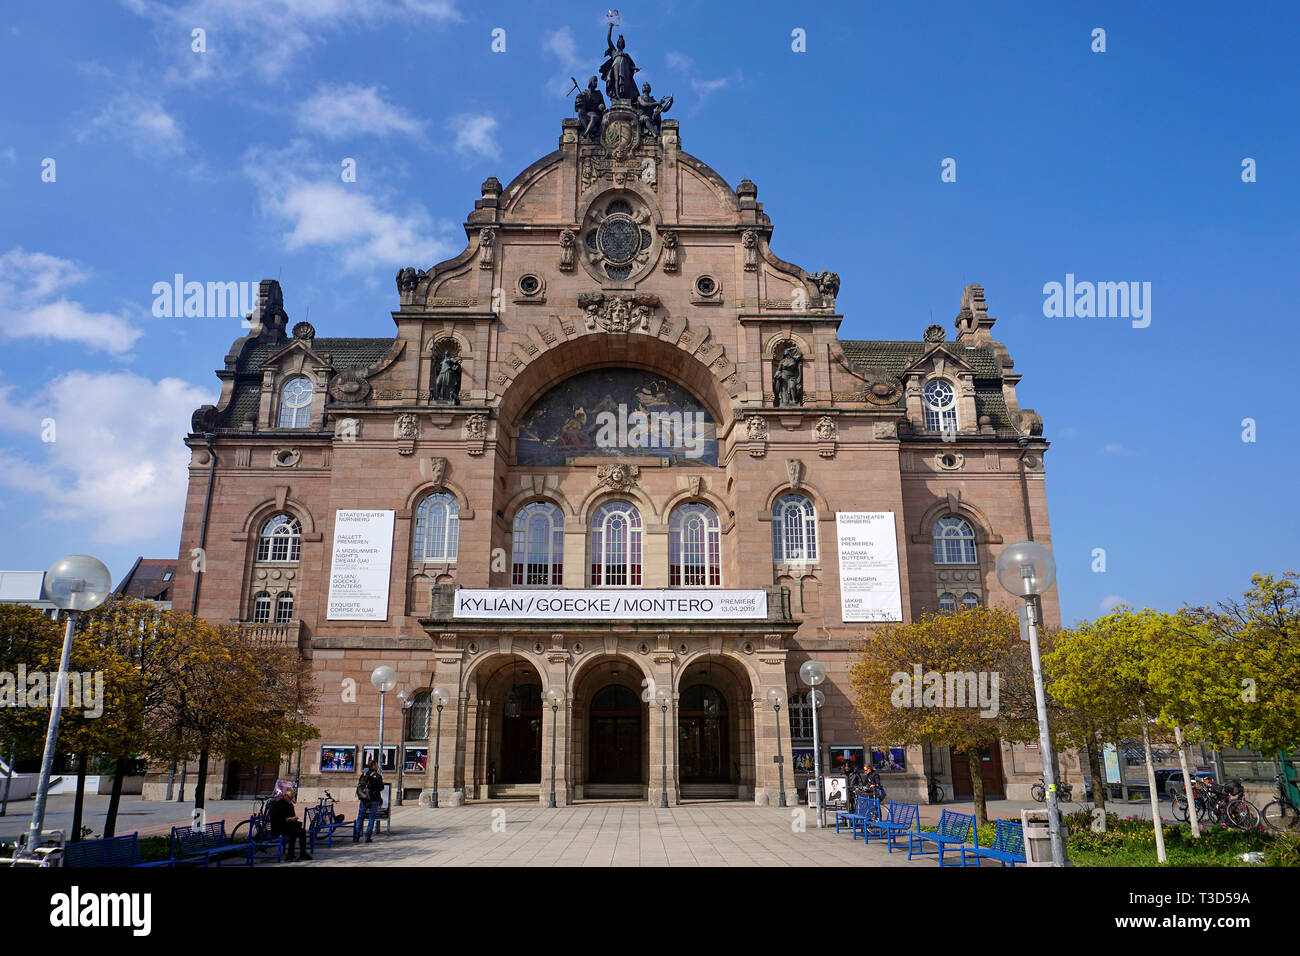 Opéra et théâtre national, de style art nouveau, Nuremberg, Franconia, Bavaria, Germany Banque D'Images